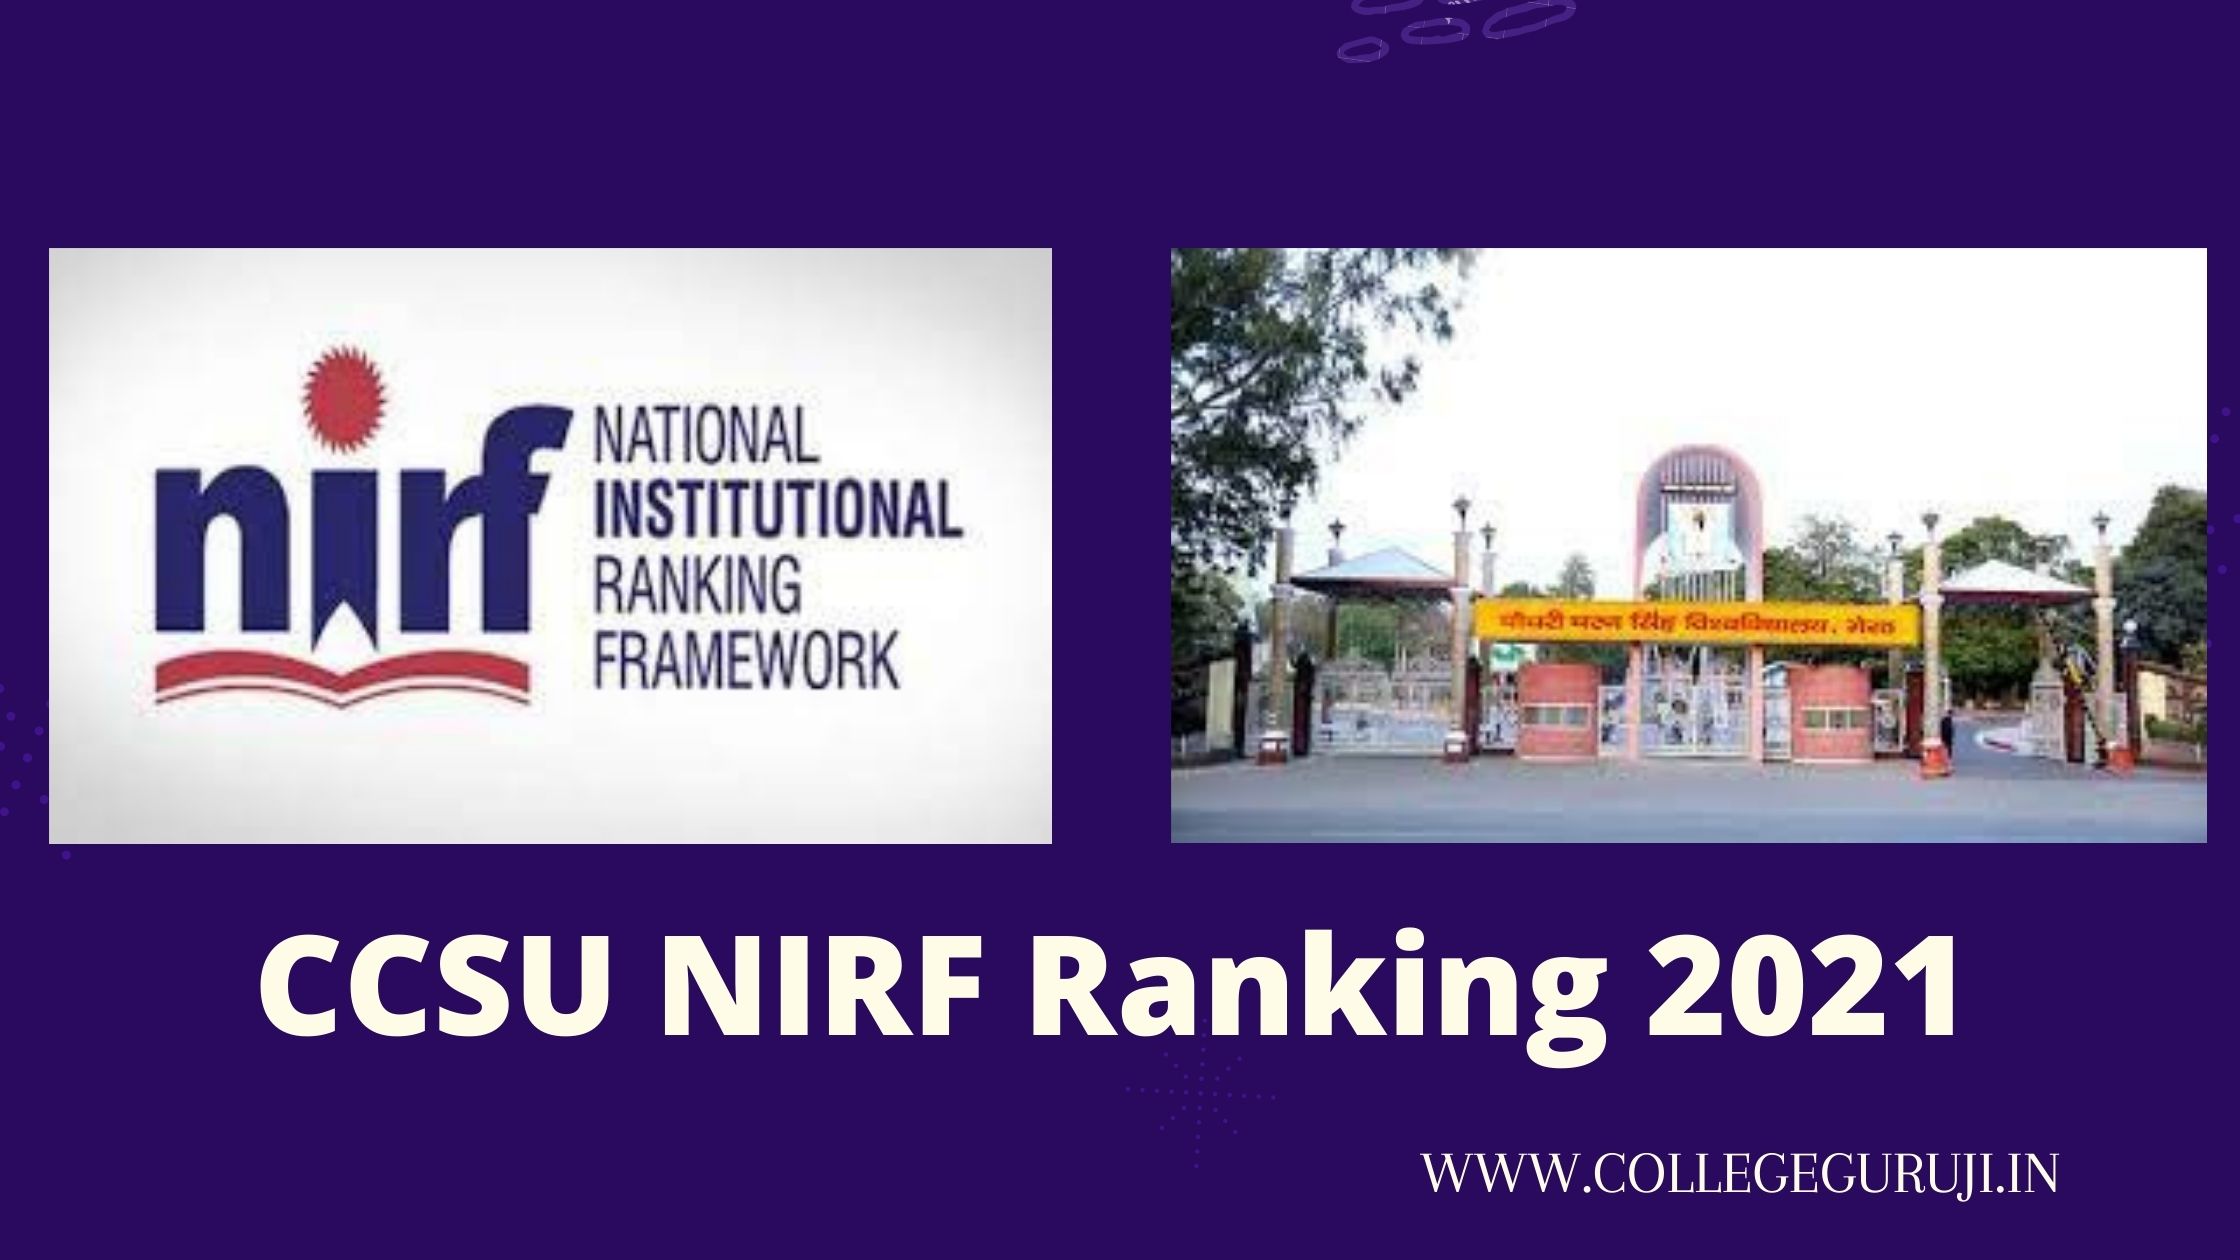 CCSU NIRF Ranking 2021